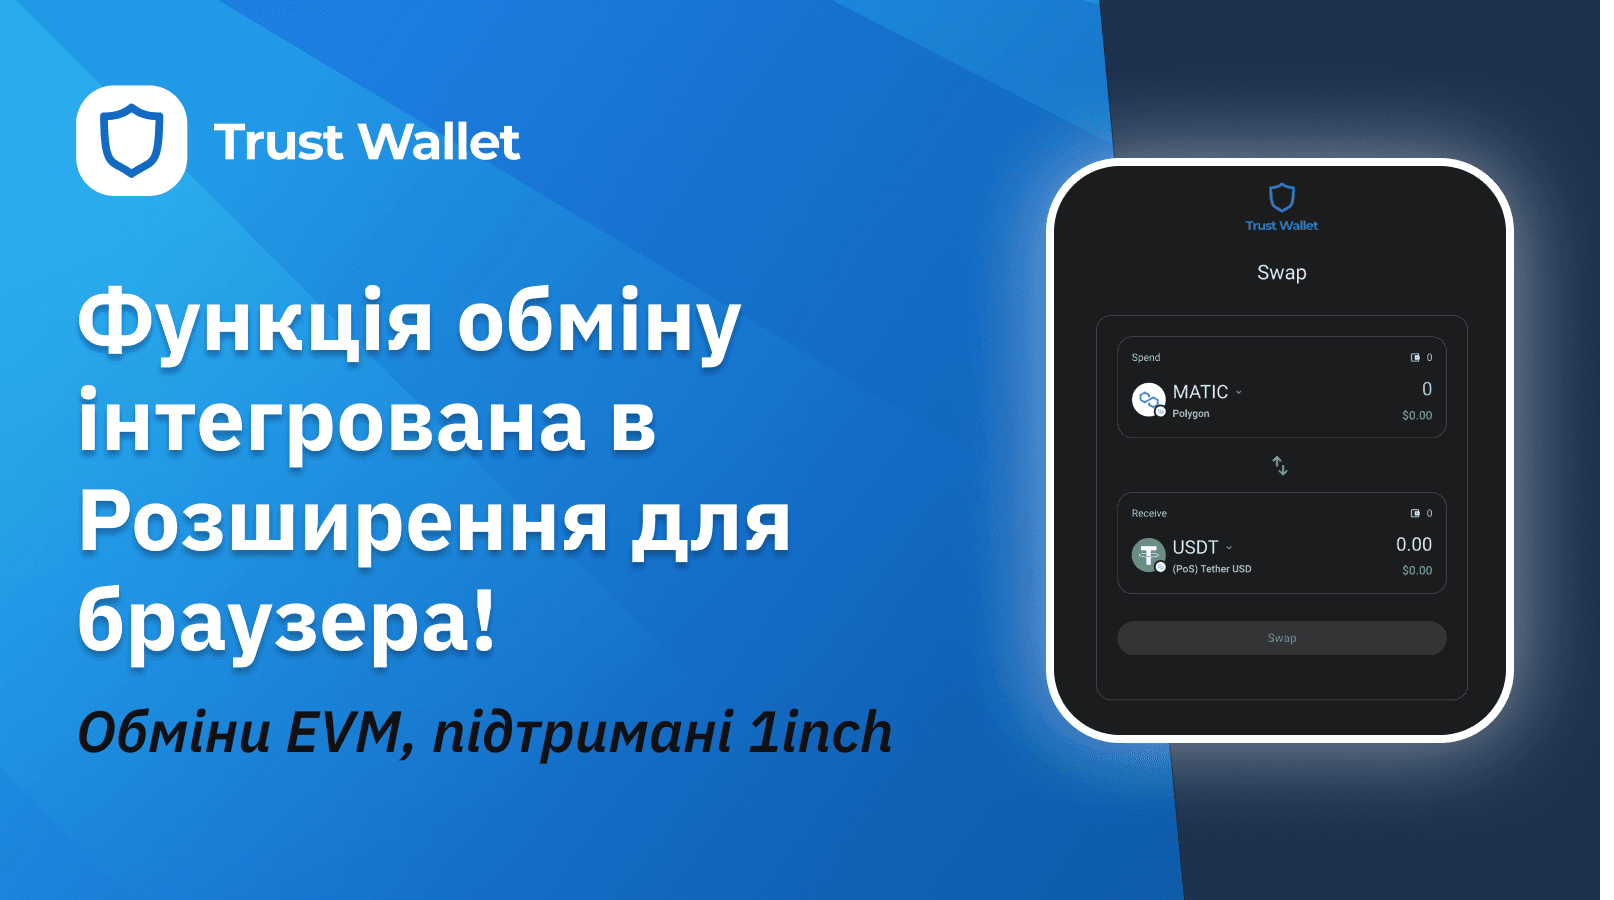 Обмін з інтеграцією 1inch за допомогою розширення Trust Wallet для браузера